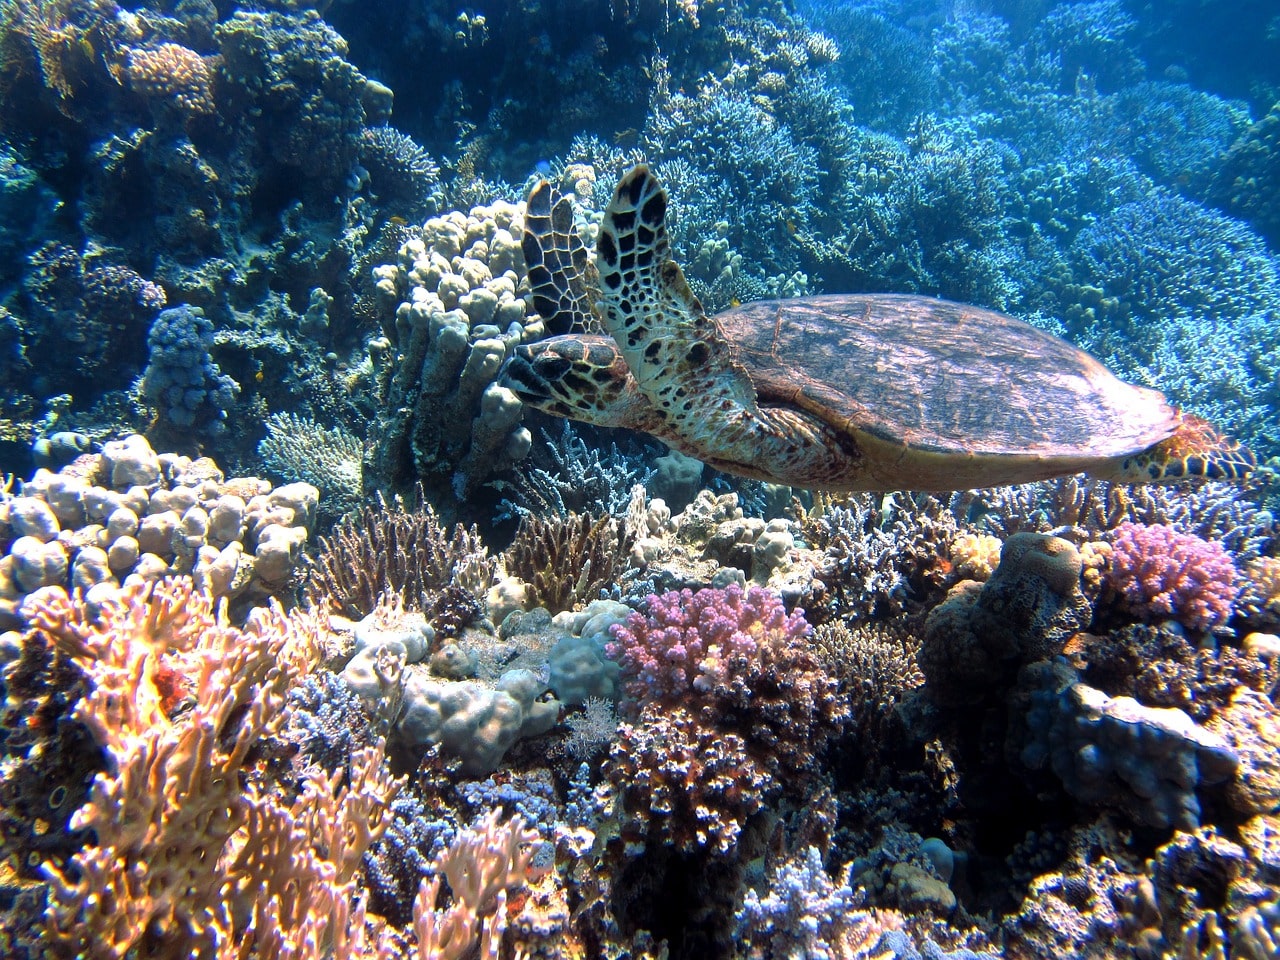 Schildkröte in der Karibik